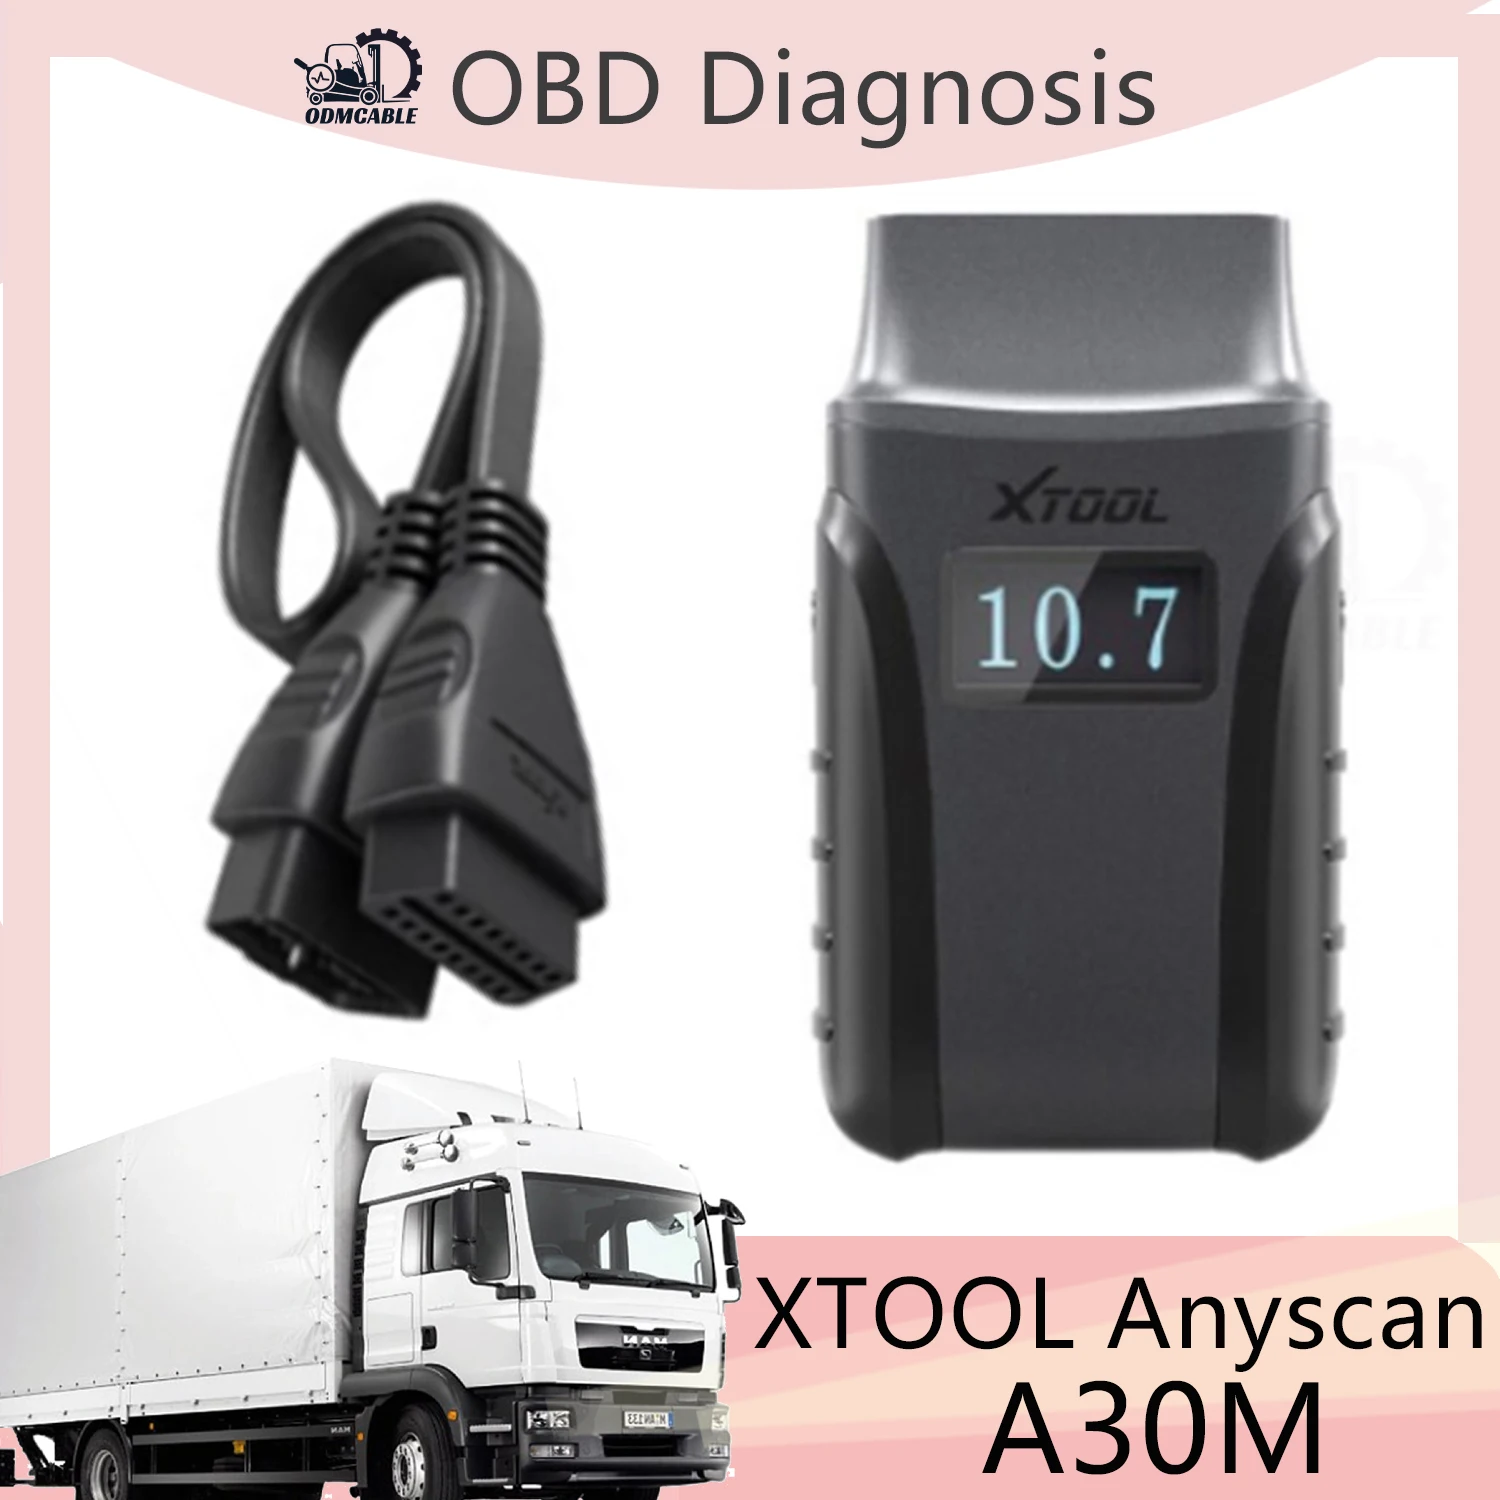 

XTOOL Anyscan A30M OBD2 диагностические инструменты для Android/IOS BT сканер считыватель кода автомобиля двунаправленное управление OBD сканер